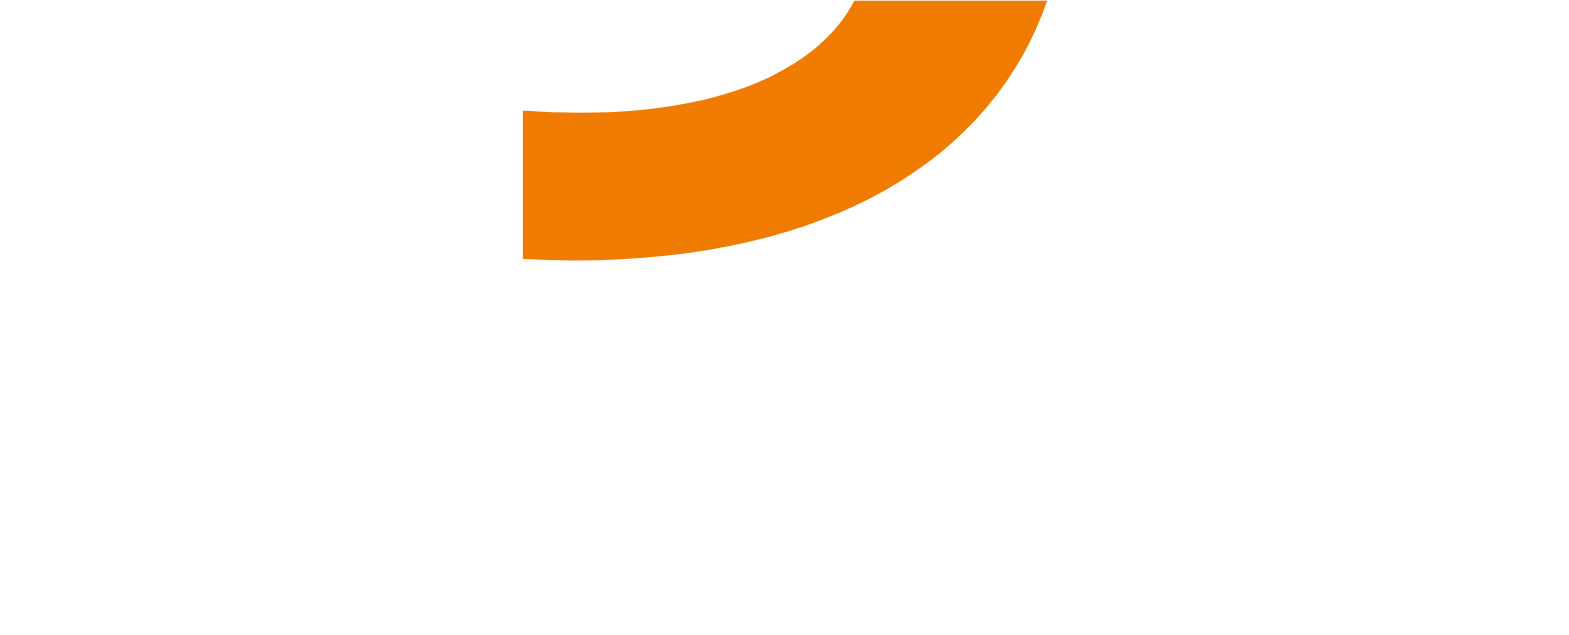 Sixt logo pour fonds sombres (PNG transparent)